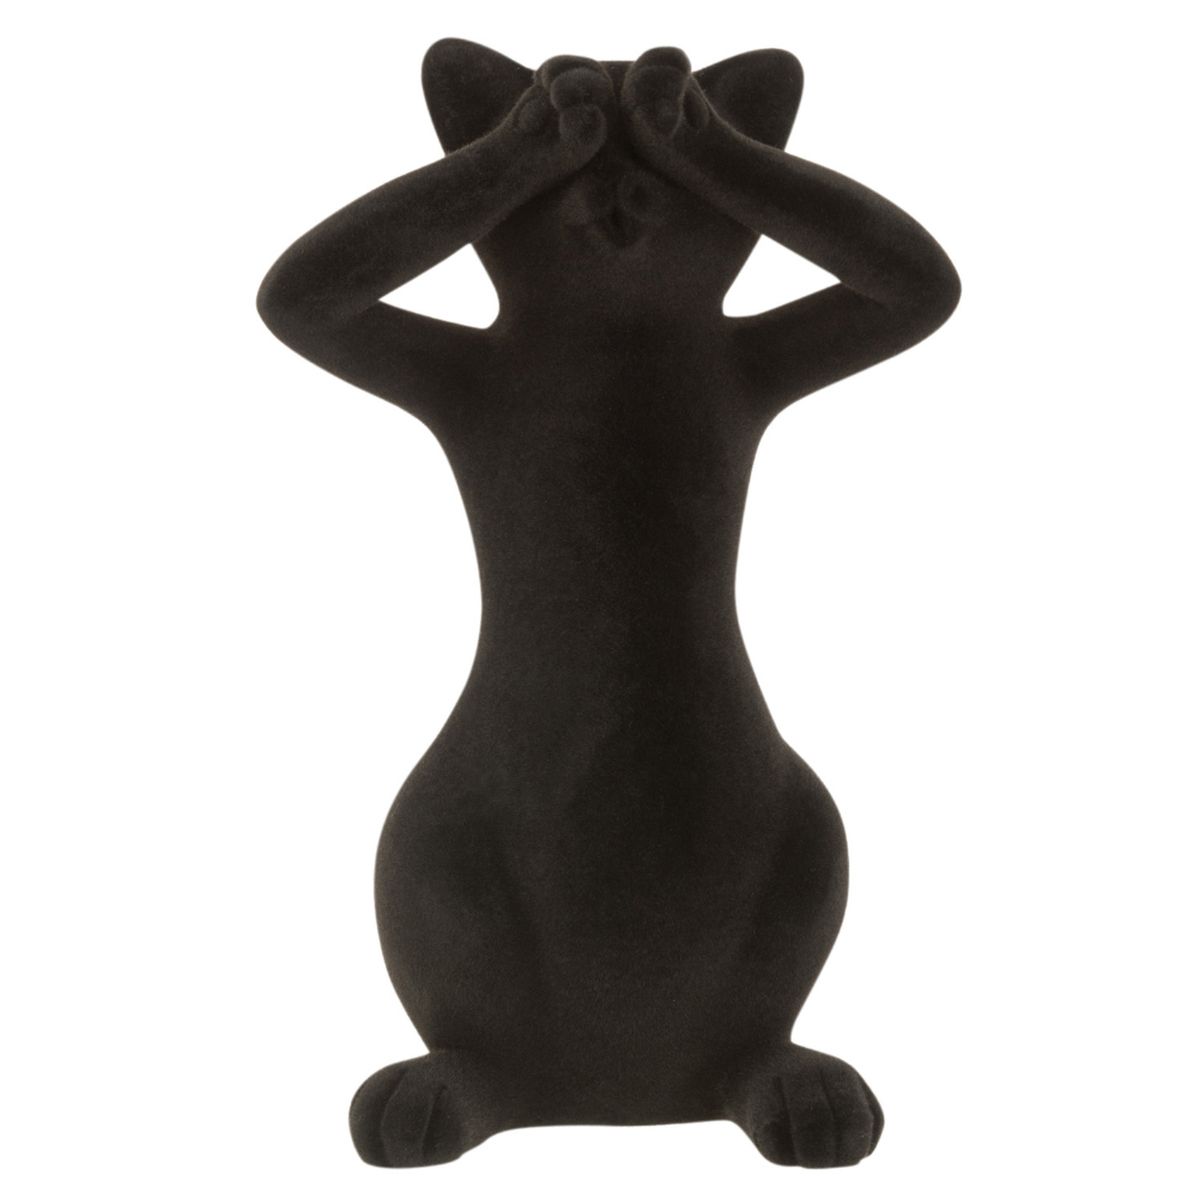 Flocked Black Resin Cat Figurine - Sees Nothing